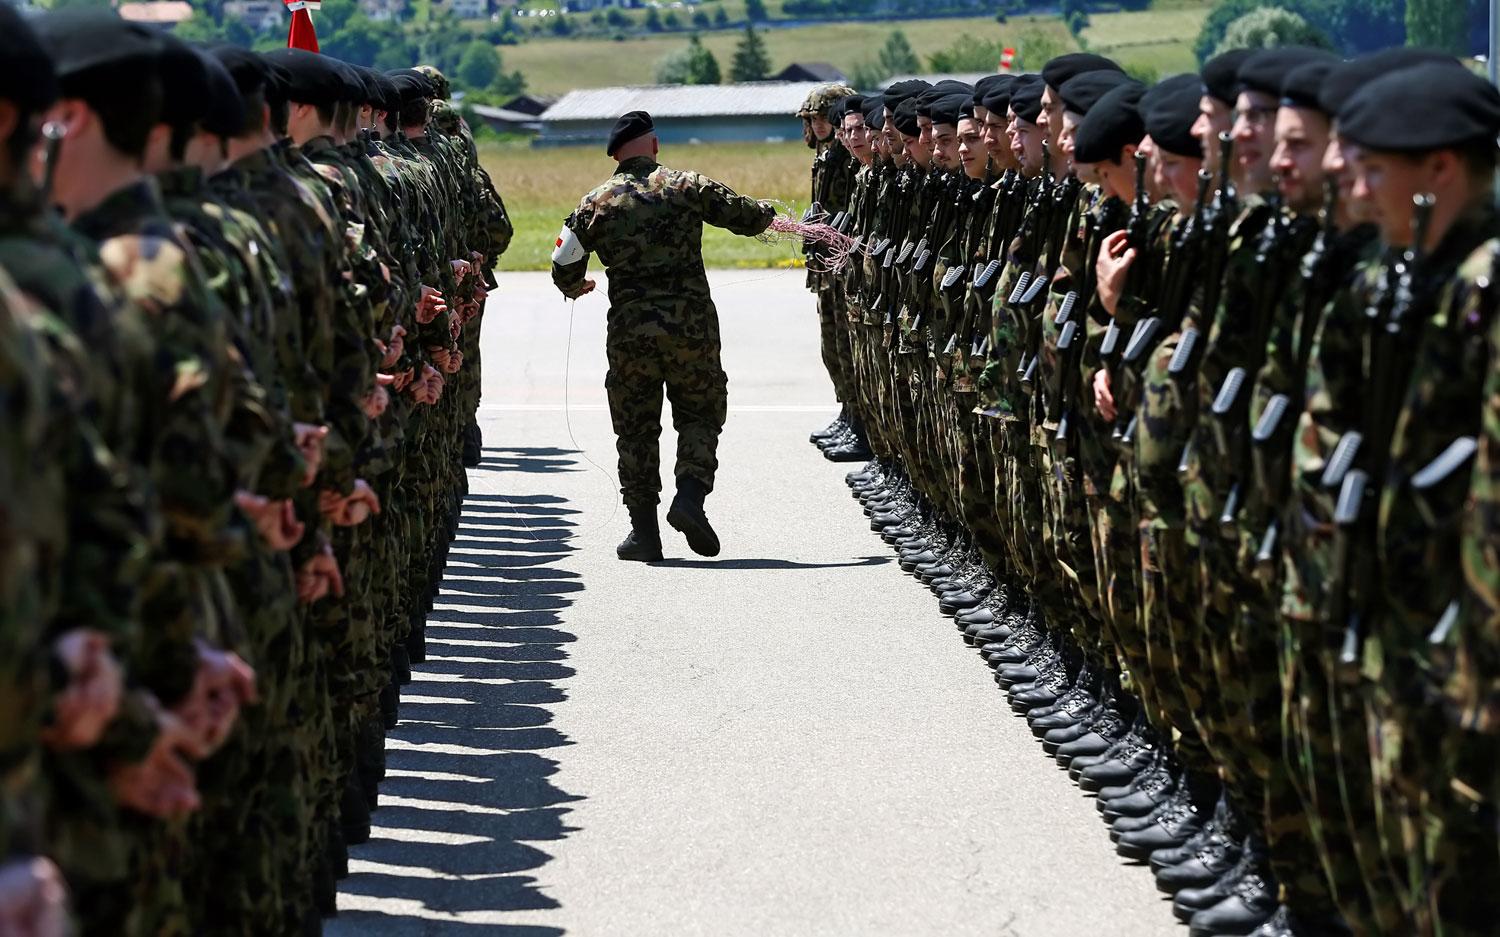 Hamarosan magyar, indiai és bolgár fehérneműt is viselnek majd a svájci katonák